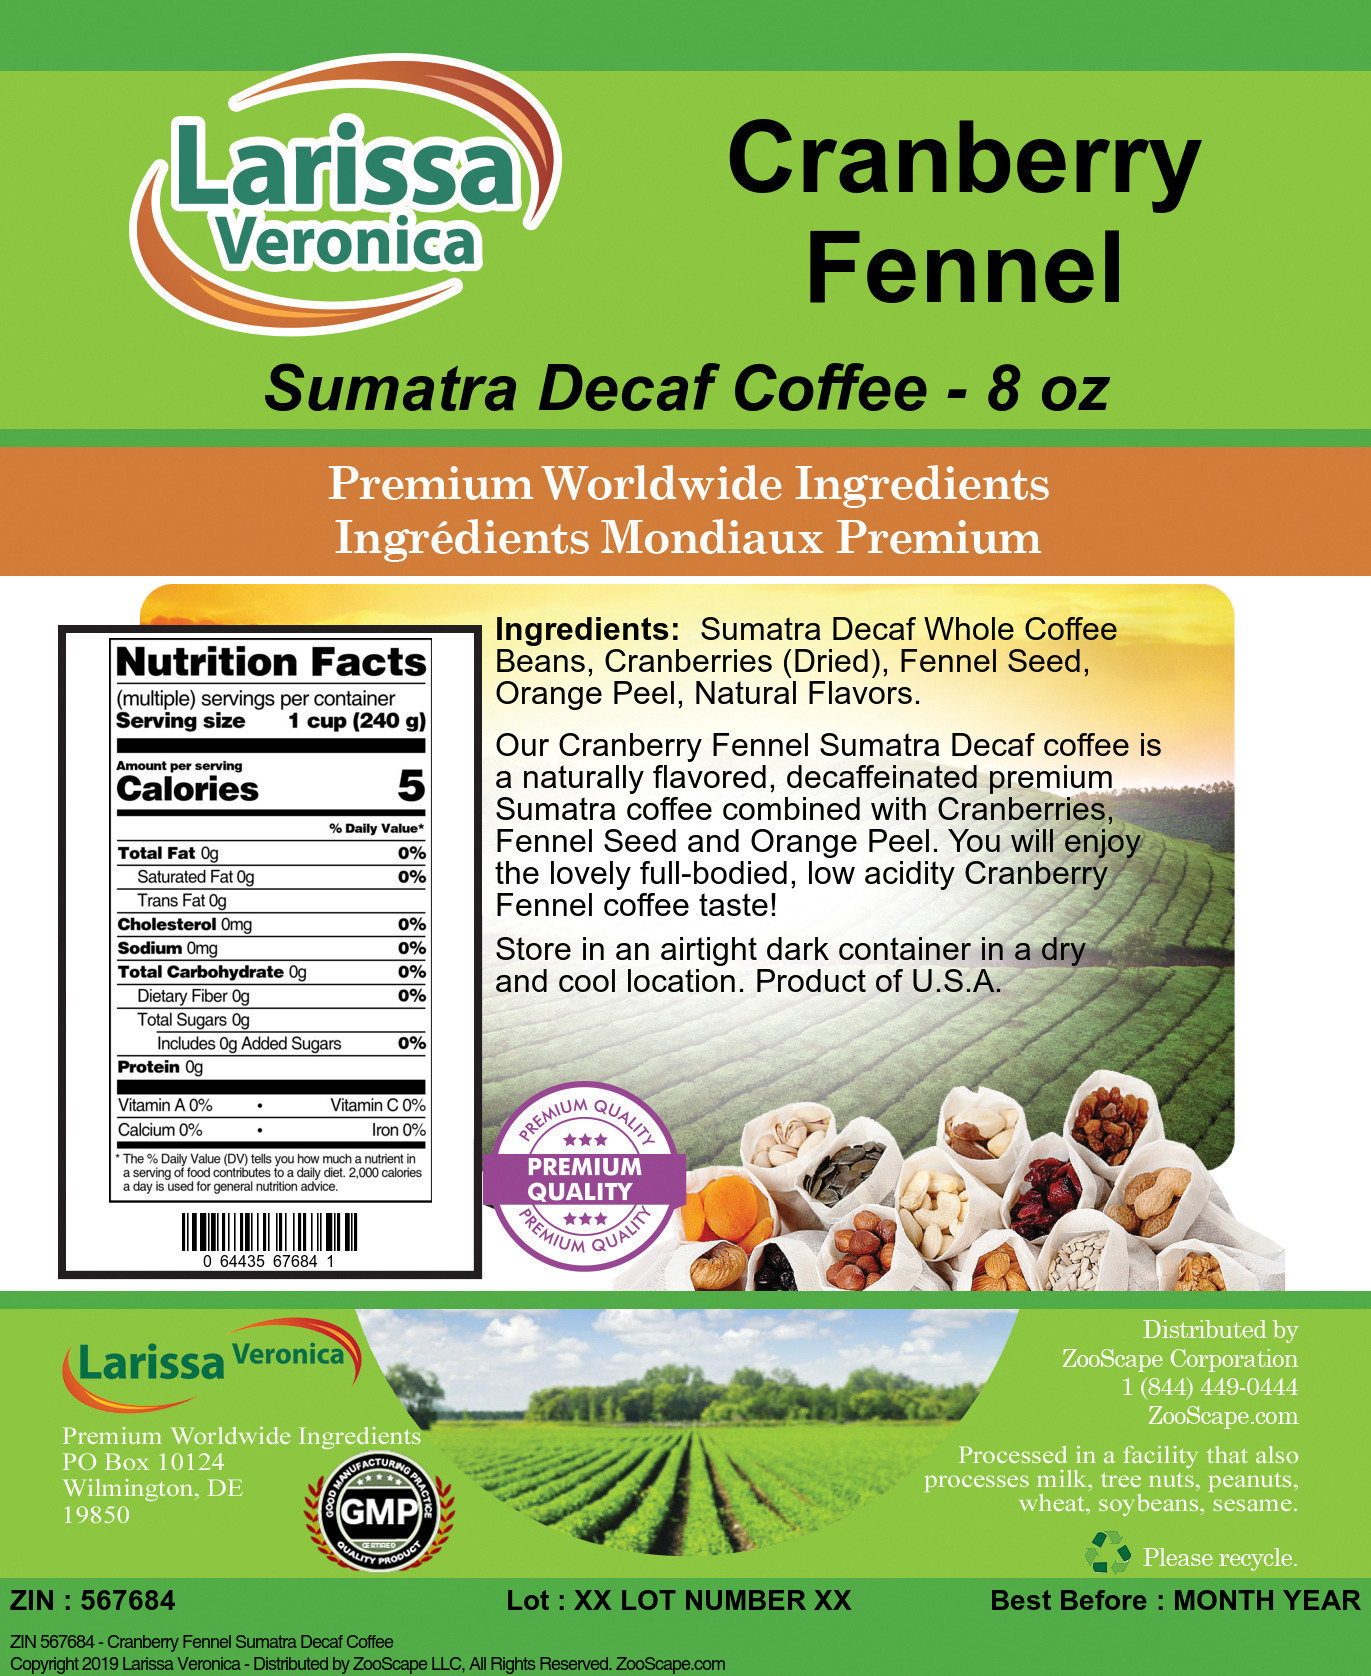 Cranberry Fennel Sumatra Decaf Coffee - Label